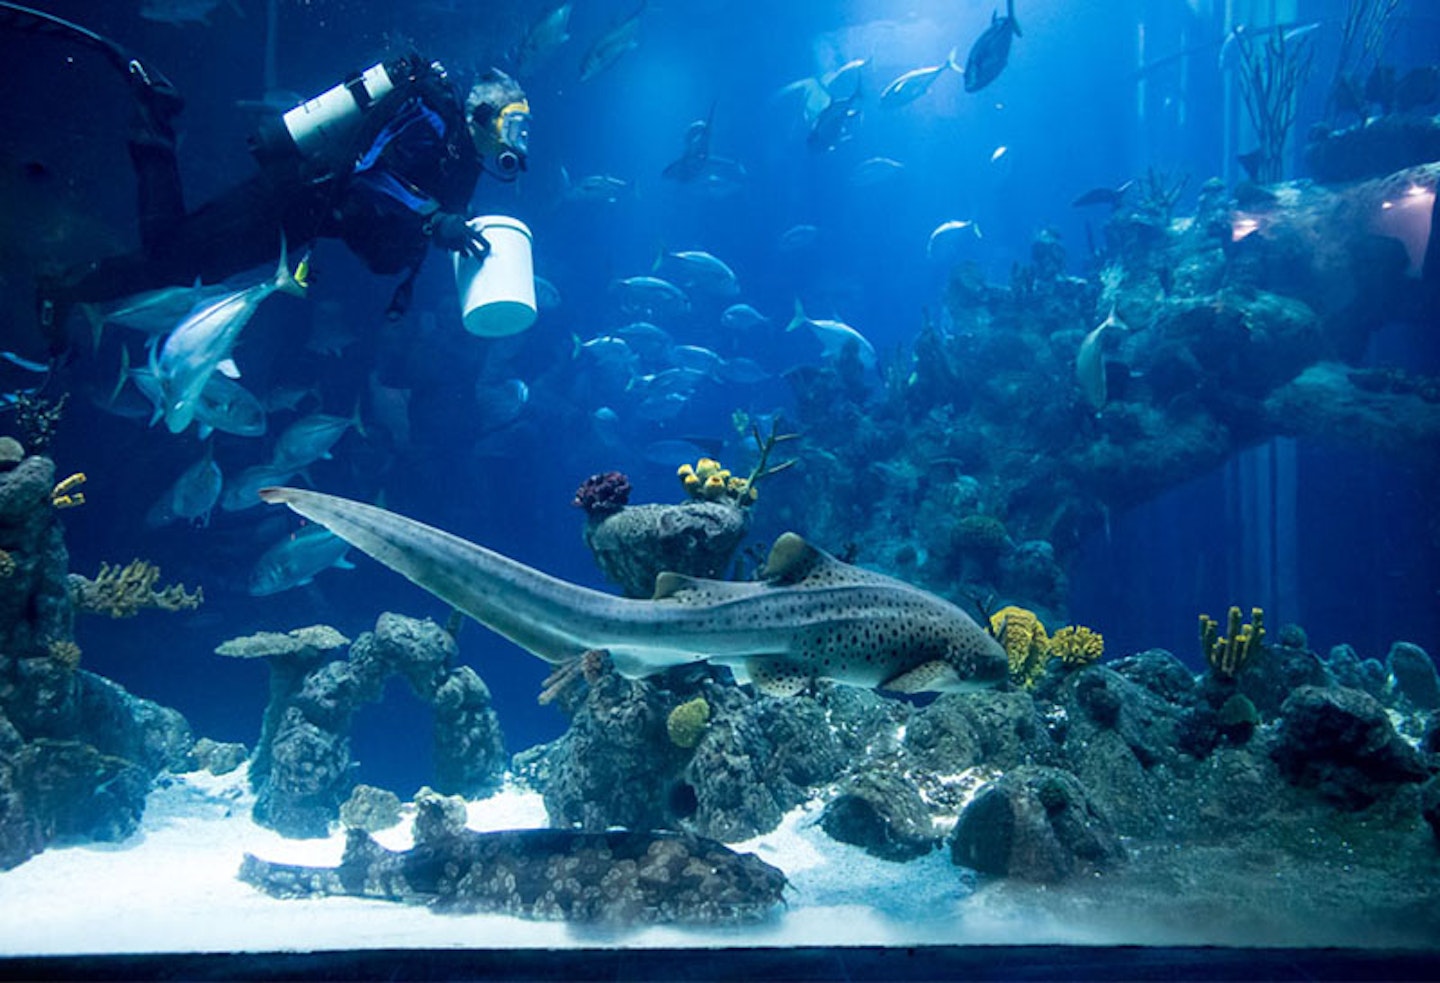 7) The Deep Aquarium, Hull